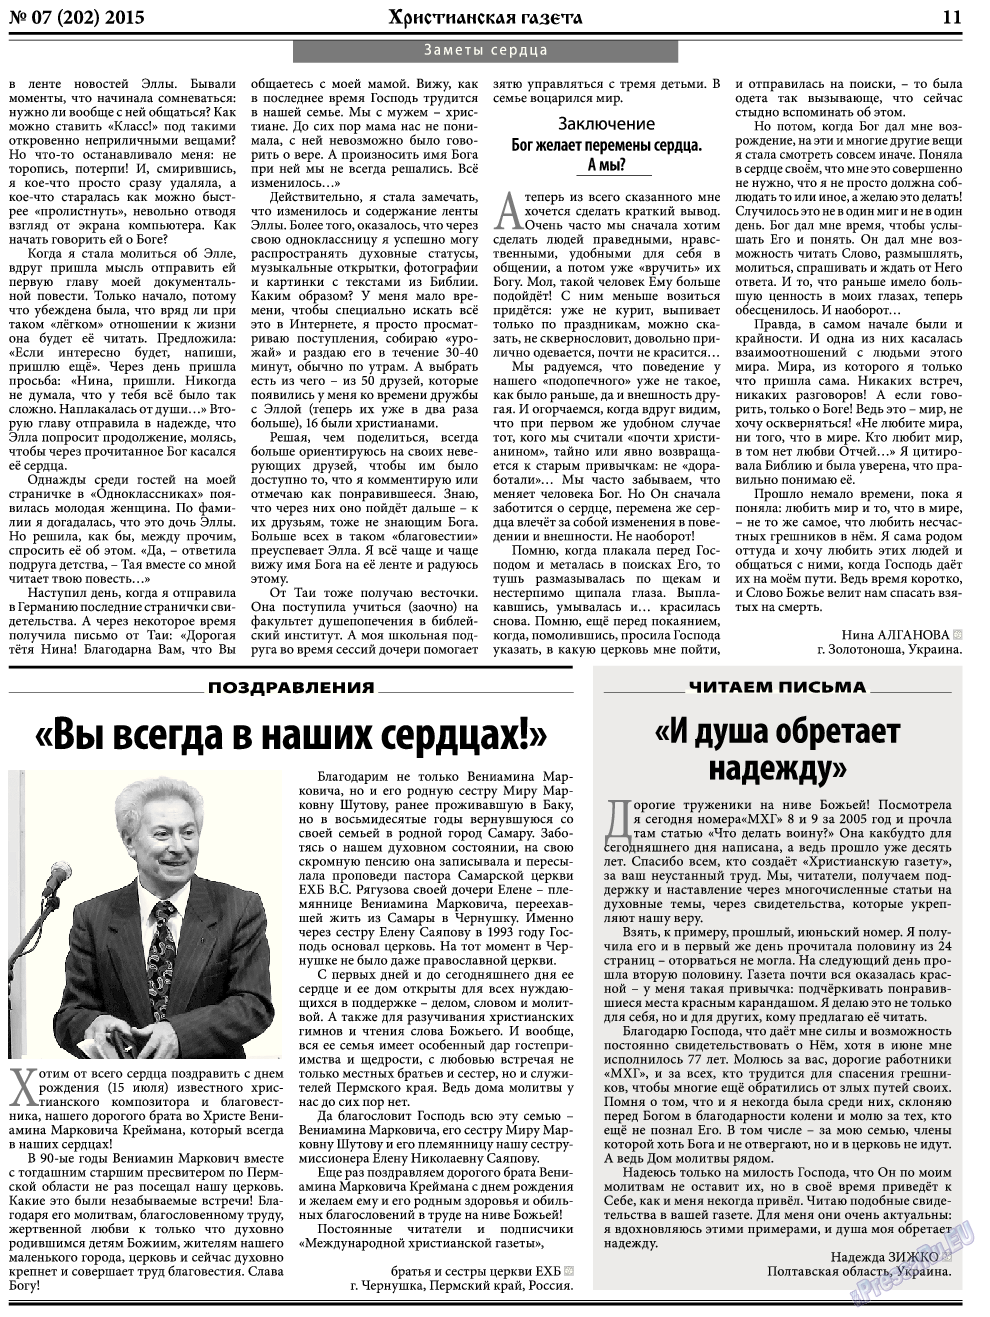 Христианская газета, газета. 2015 №7 стр.11